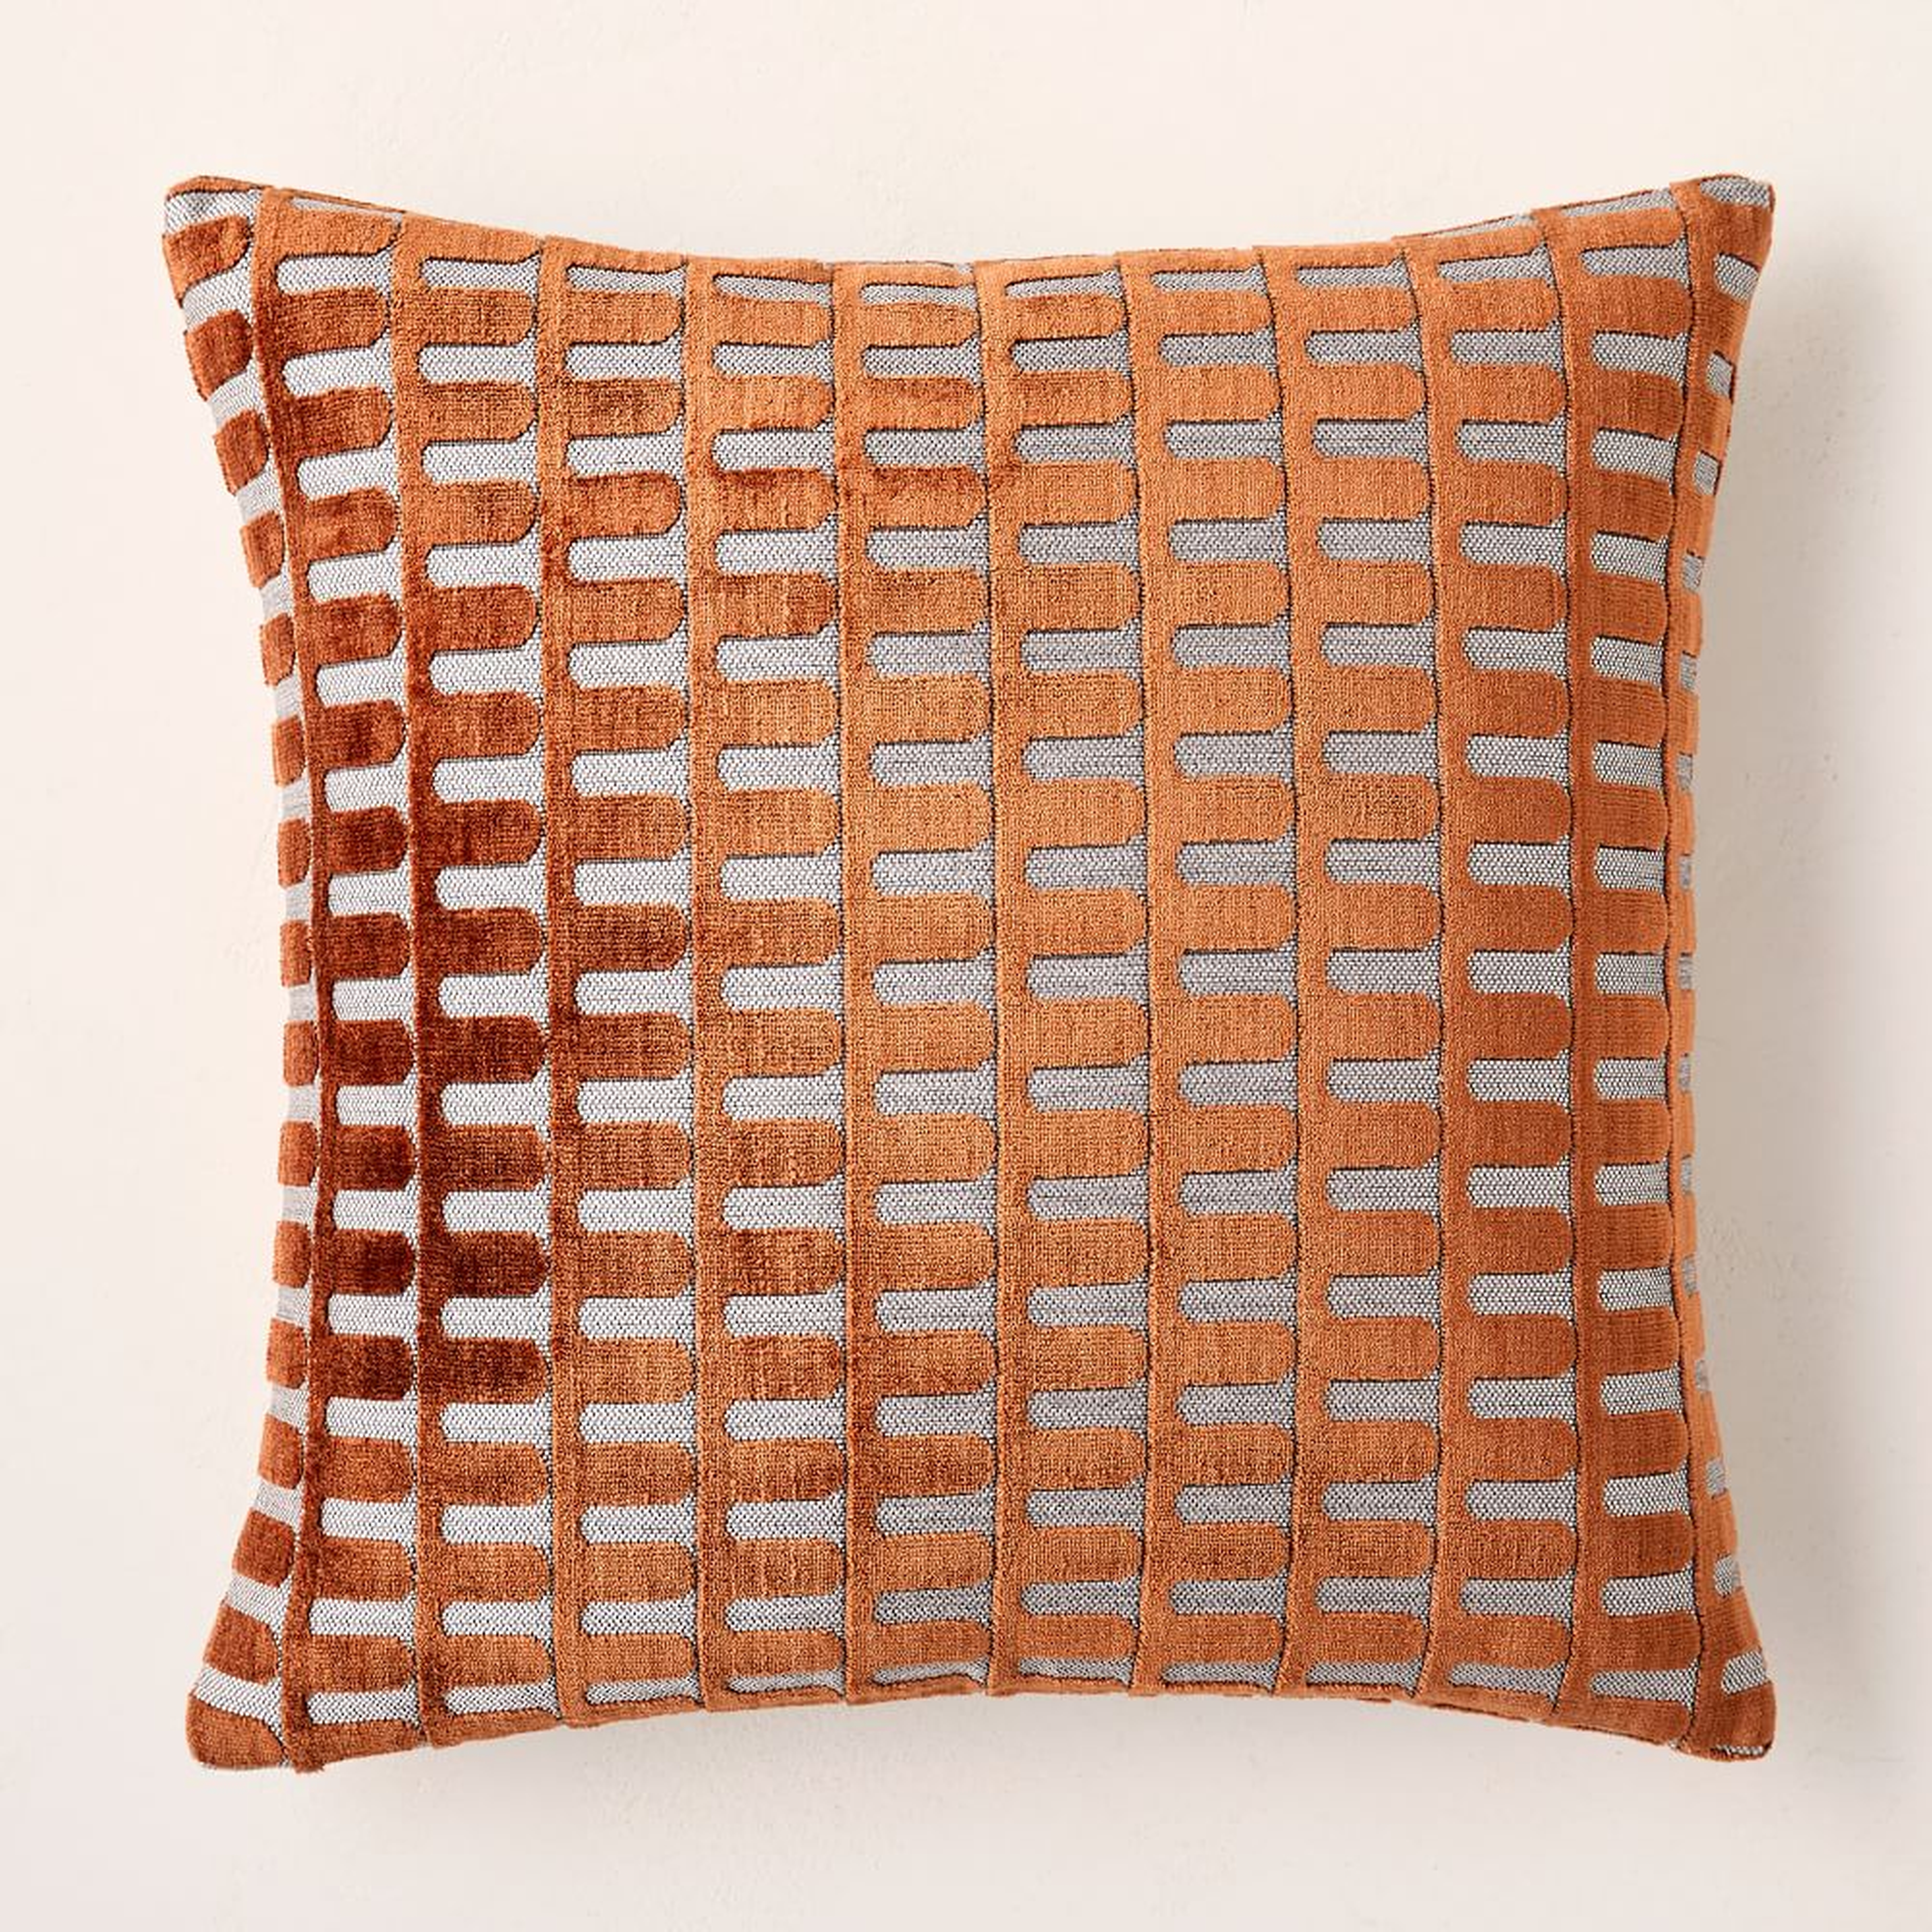 Cut Velvet Archways Pillow Cover, 20"x20", Copper - West Elm